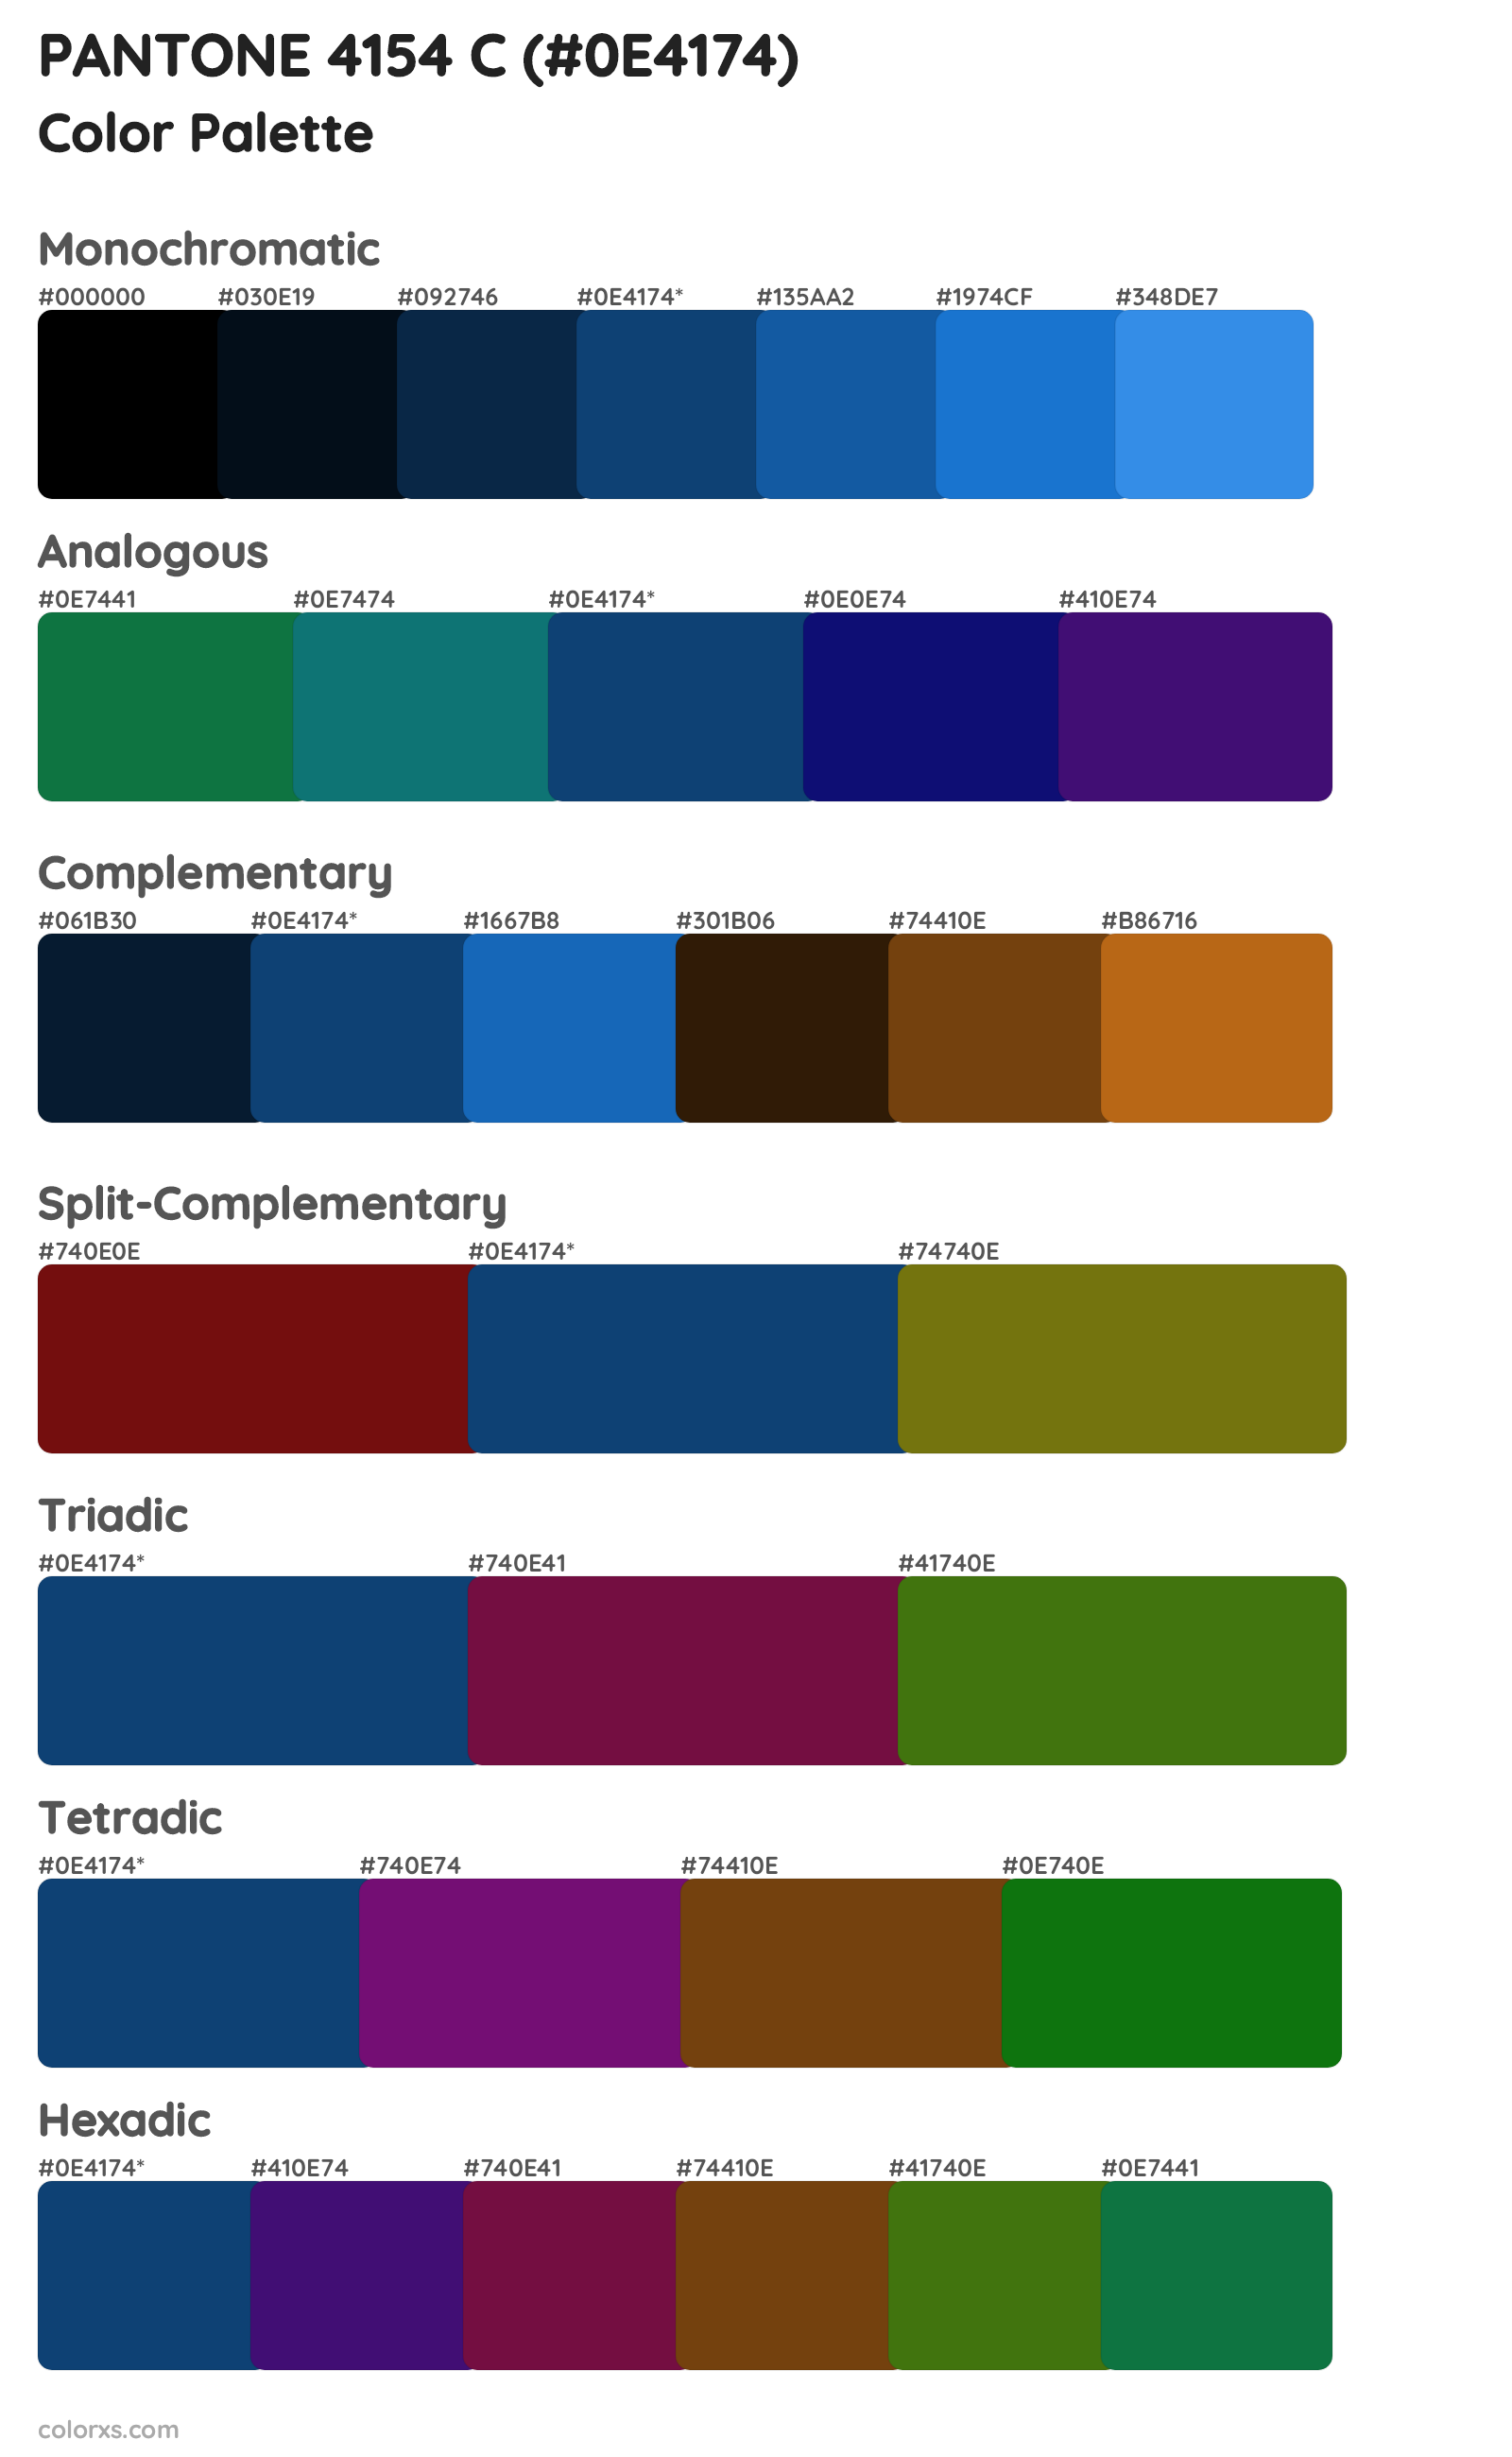 PANTONE 4154 C Color Scheme Palettes